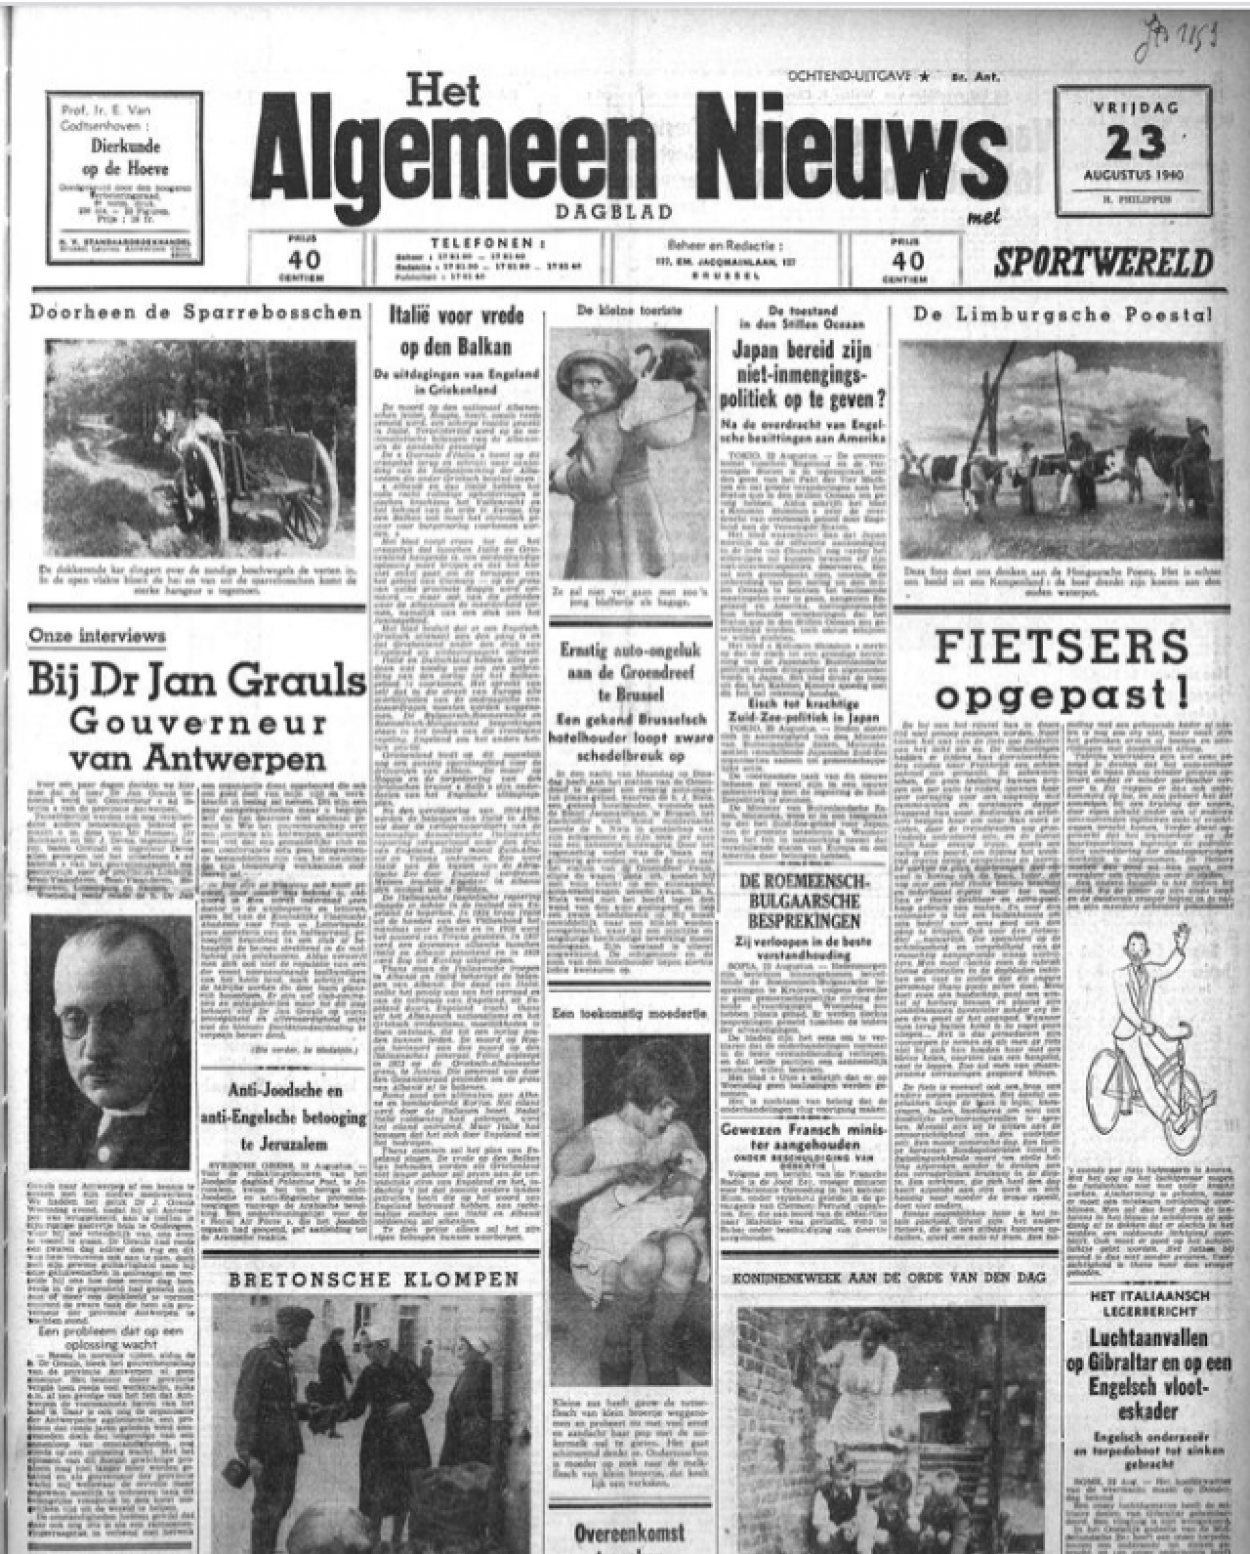 algemeen-nieuws-23-8-1940-p-1.png